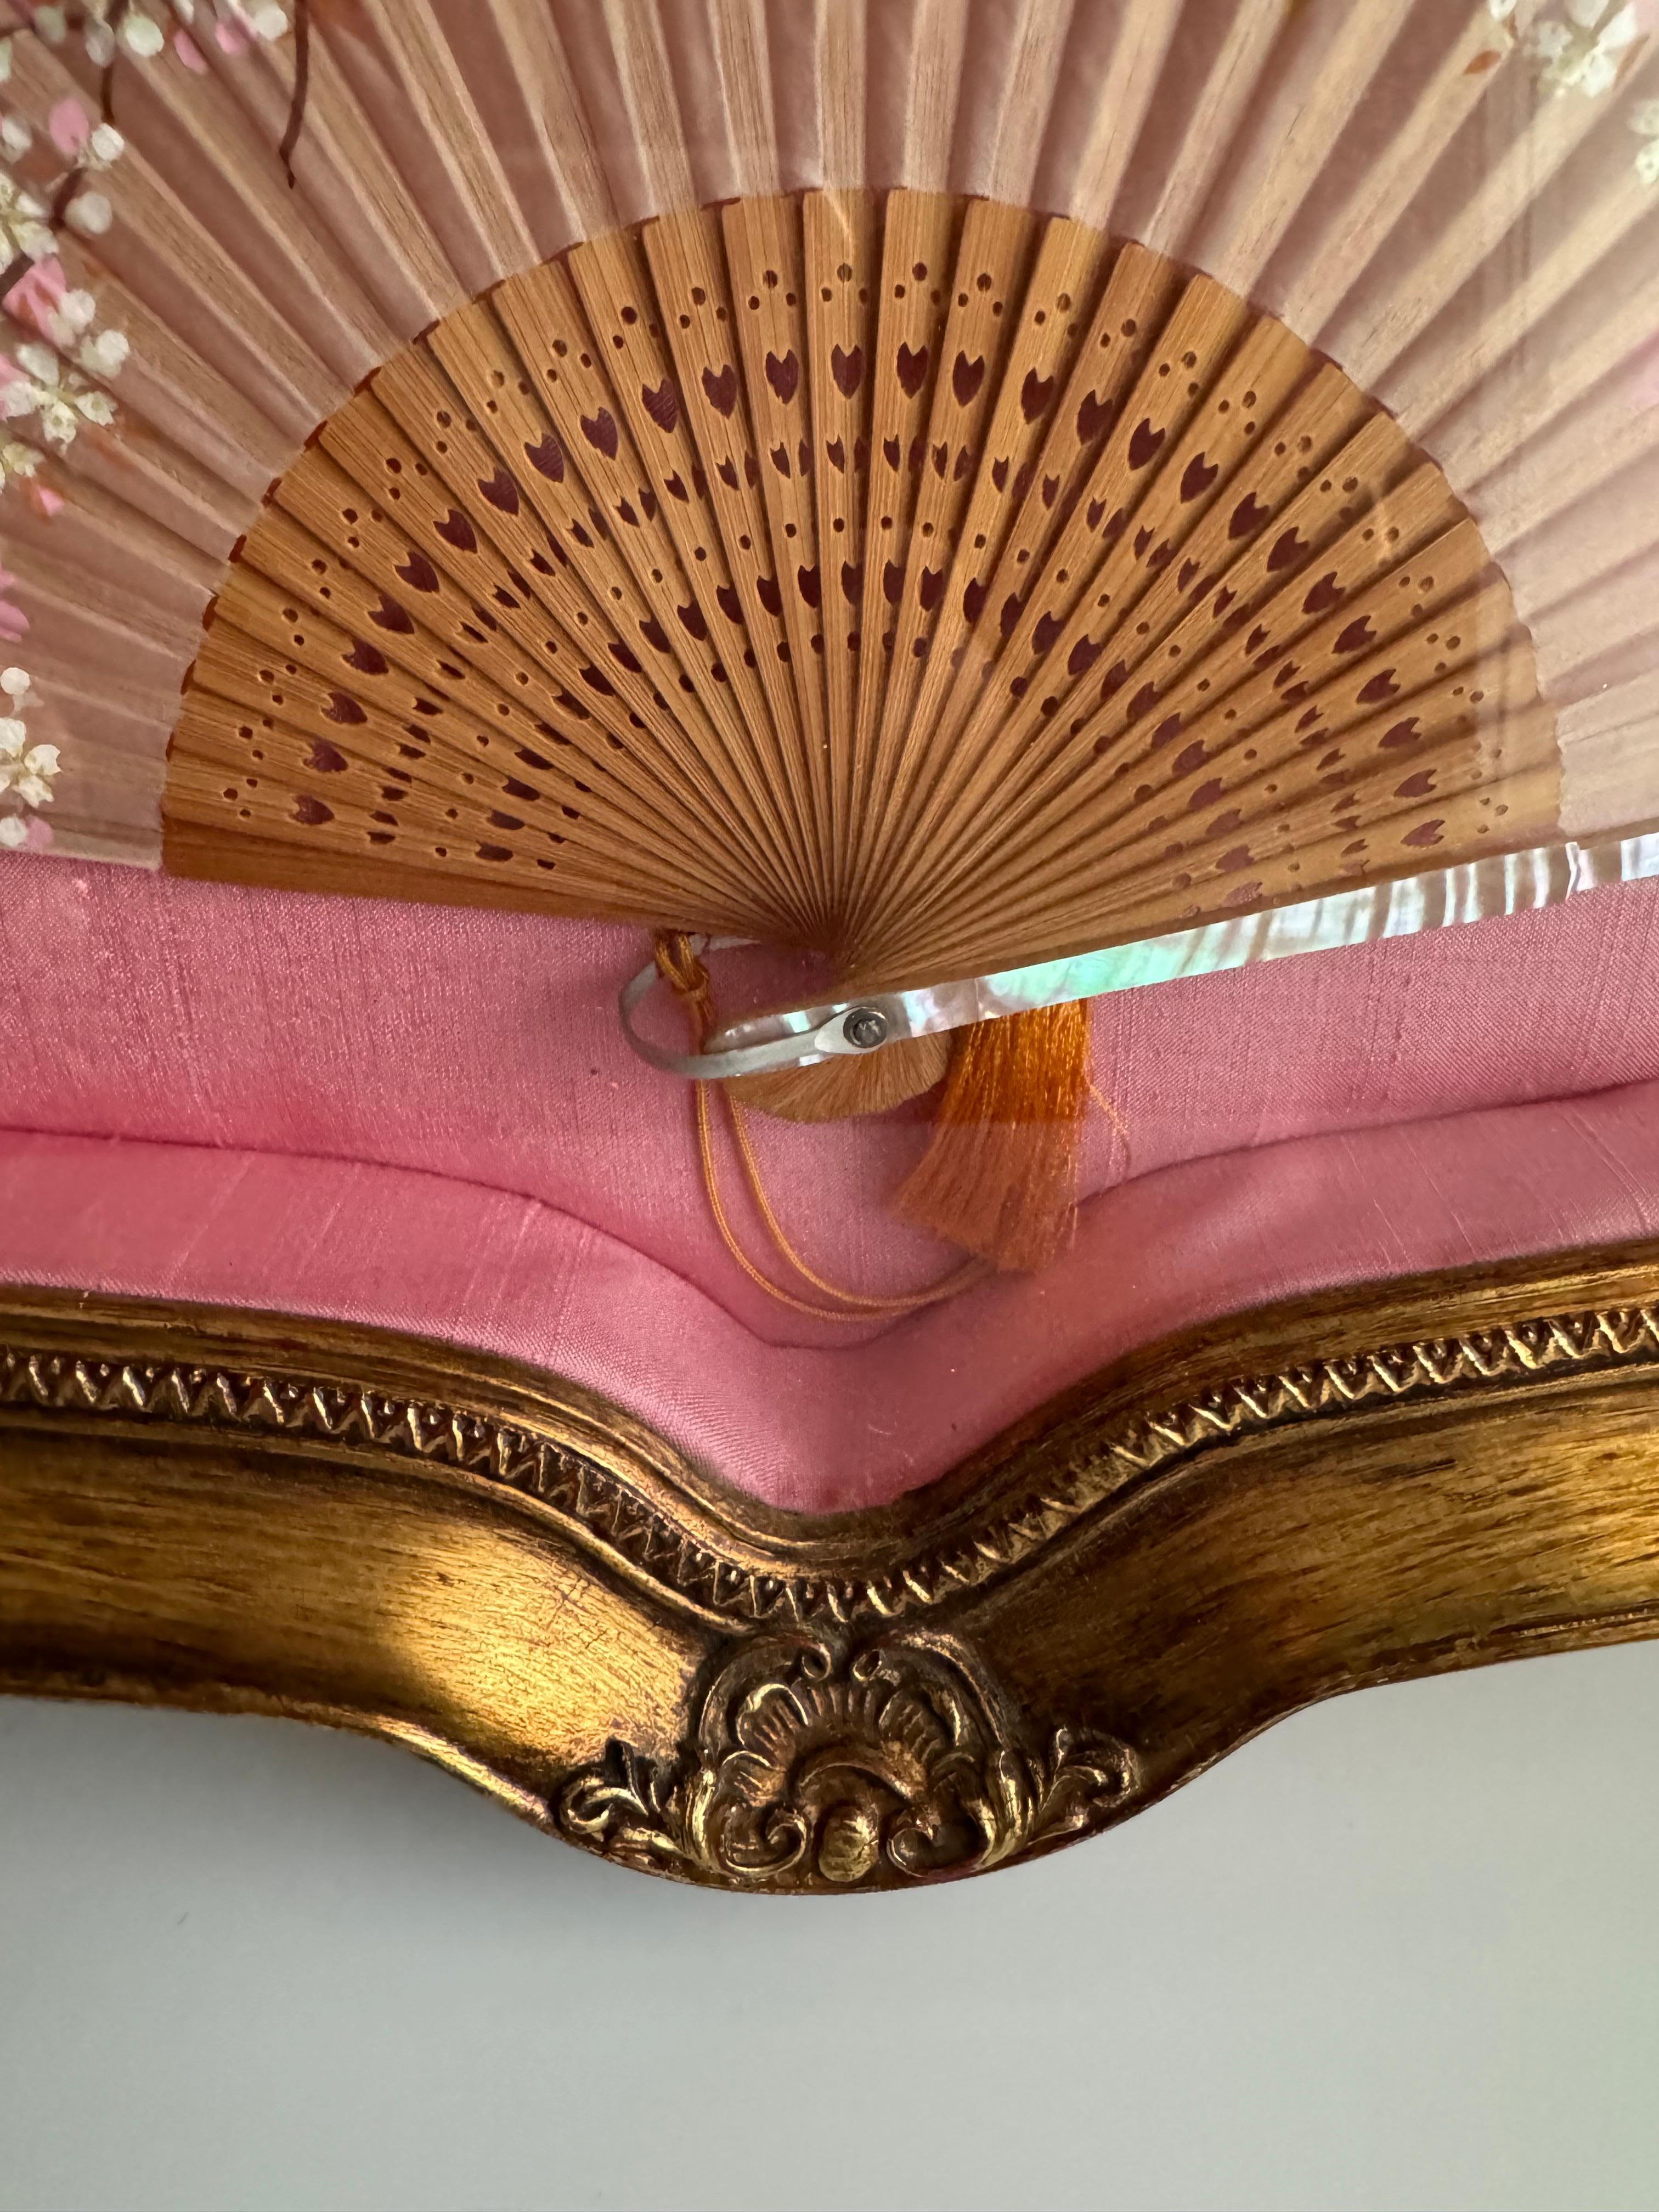 Wunderschöner japanischer Vintage-Fächer . Es weist handgemalte Kirschblüten-Details und eingelegte Perlmutt-Elemente auf. Der Fächer ist in einem Schattenboxrahmen ausgestellt, der mit rosa Seide ausgekleidet zu sein scheint, was seine Ästhetik